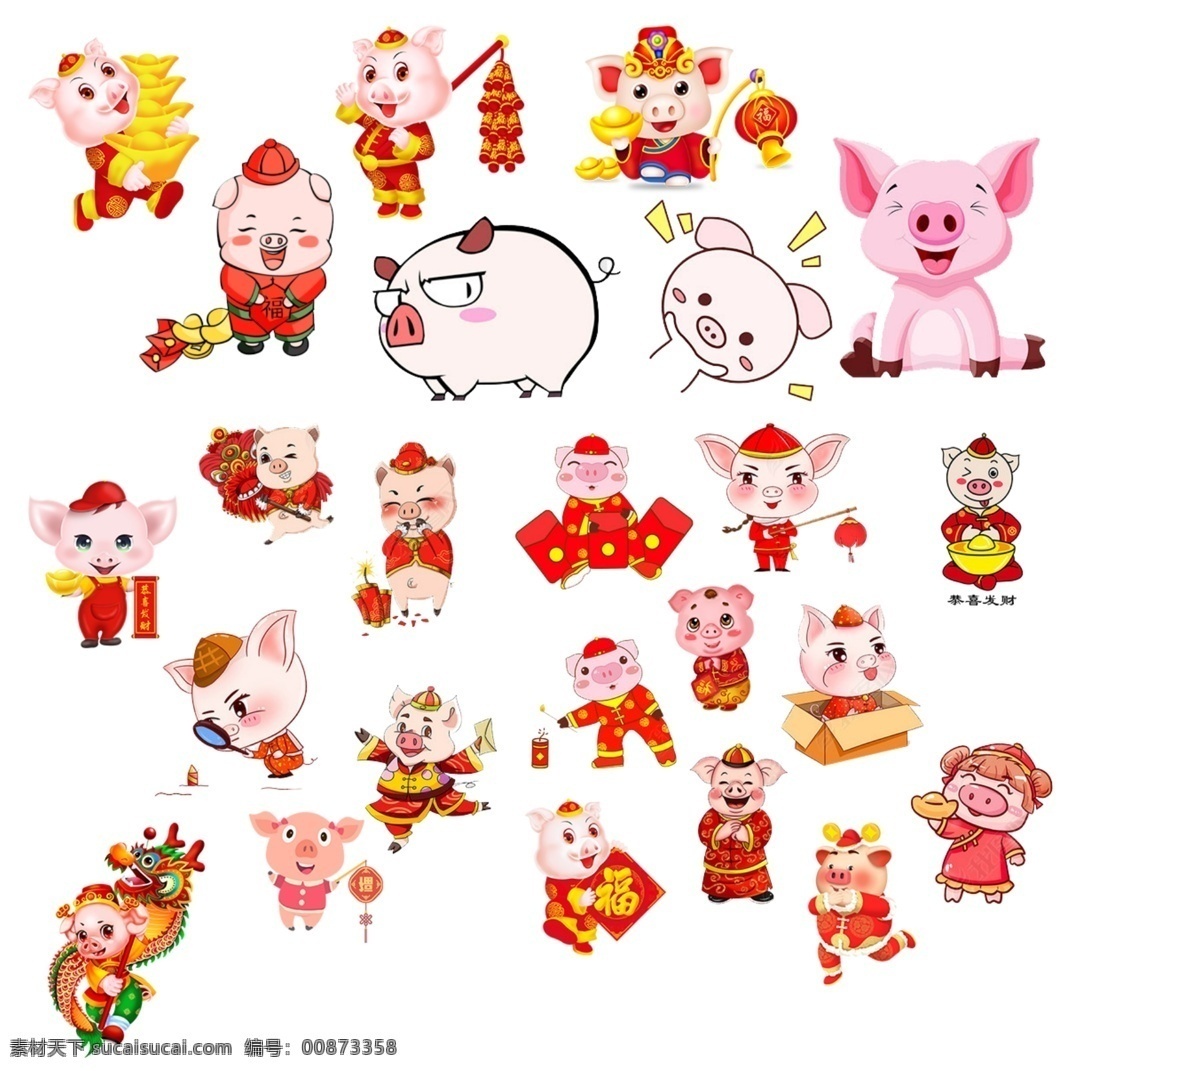 猪年形象素材 猪年形象 猪年素材 卡通猪 彩色猪 可爱猪 喜庆猪 福猪 麦兜 剪纸猪 各种猪猪 新年 猪年 新年快乐